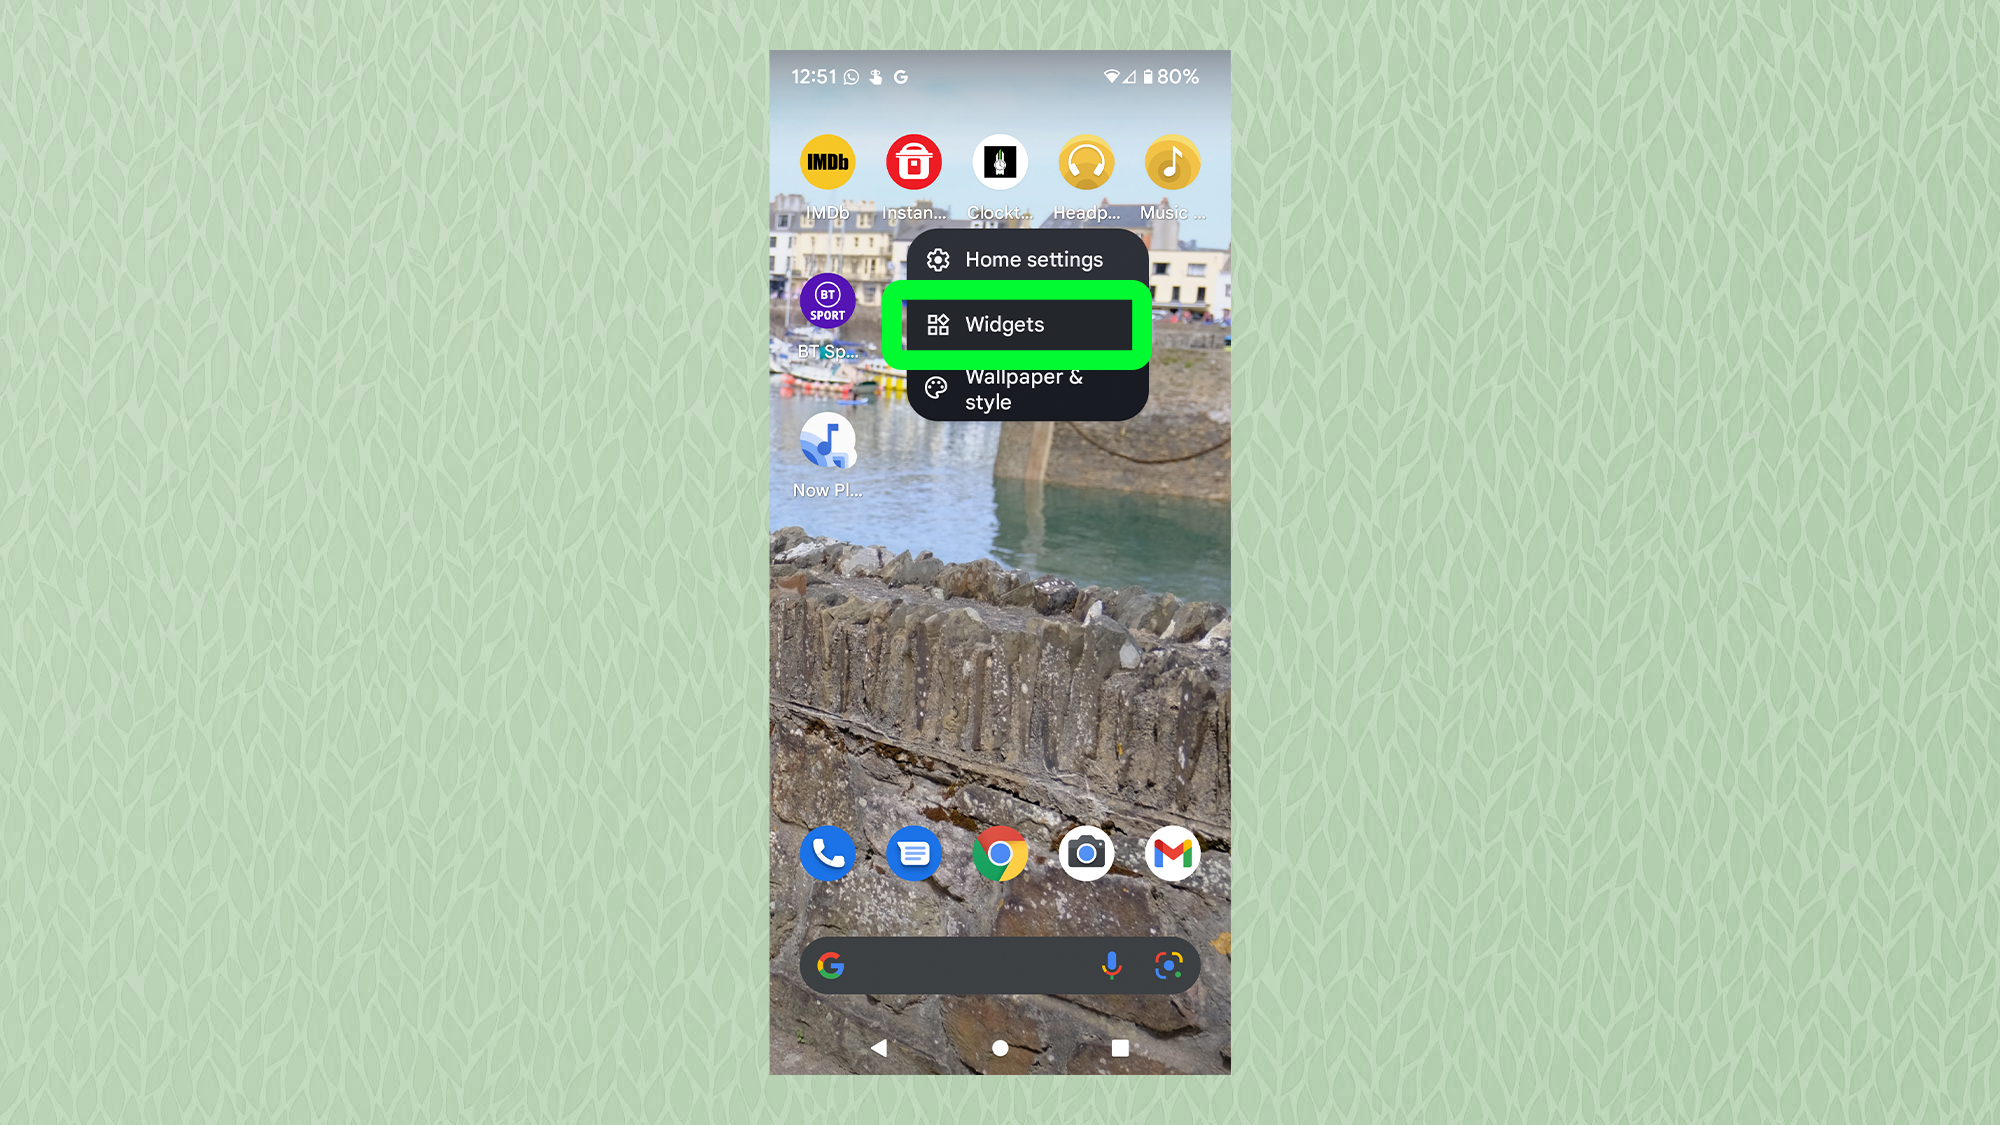 Скриншот с Android, показывающий домашний экран с выделенным всплывающим окном виджетов.